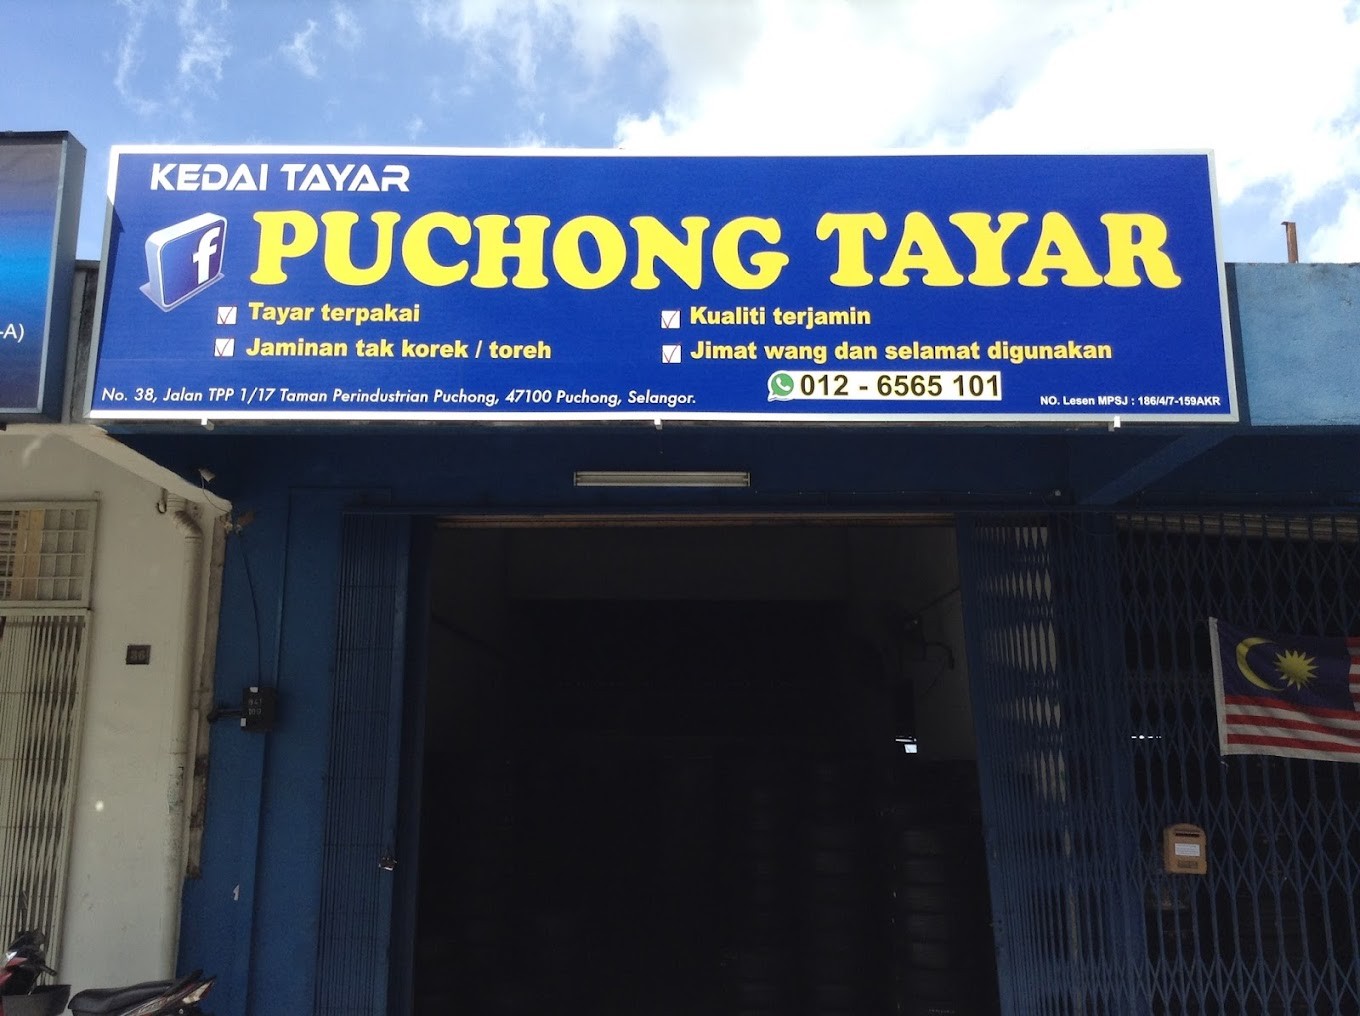 Kedai Tayar Puchong